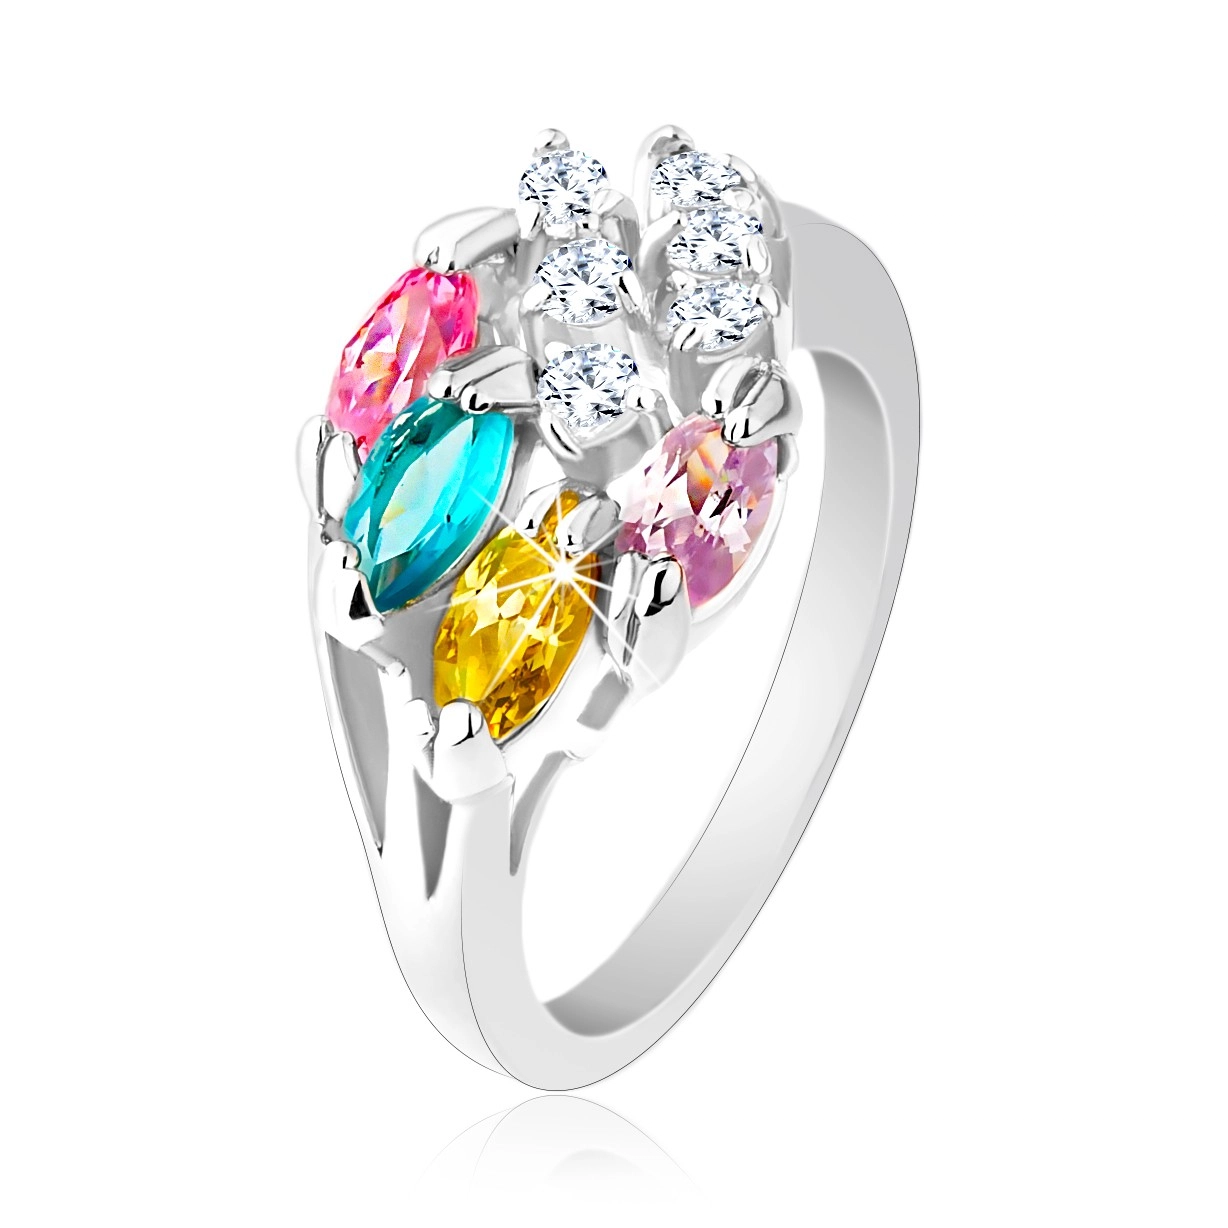 Lesklý prsteň striebornej farby, farebné zirkónové zrnká, číre zirkóniky - Veľkosť: 54 mm